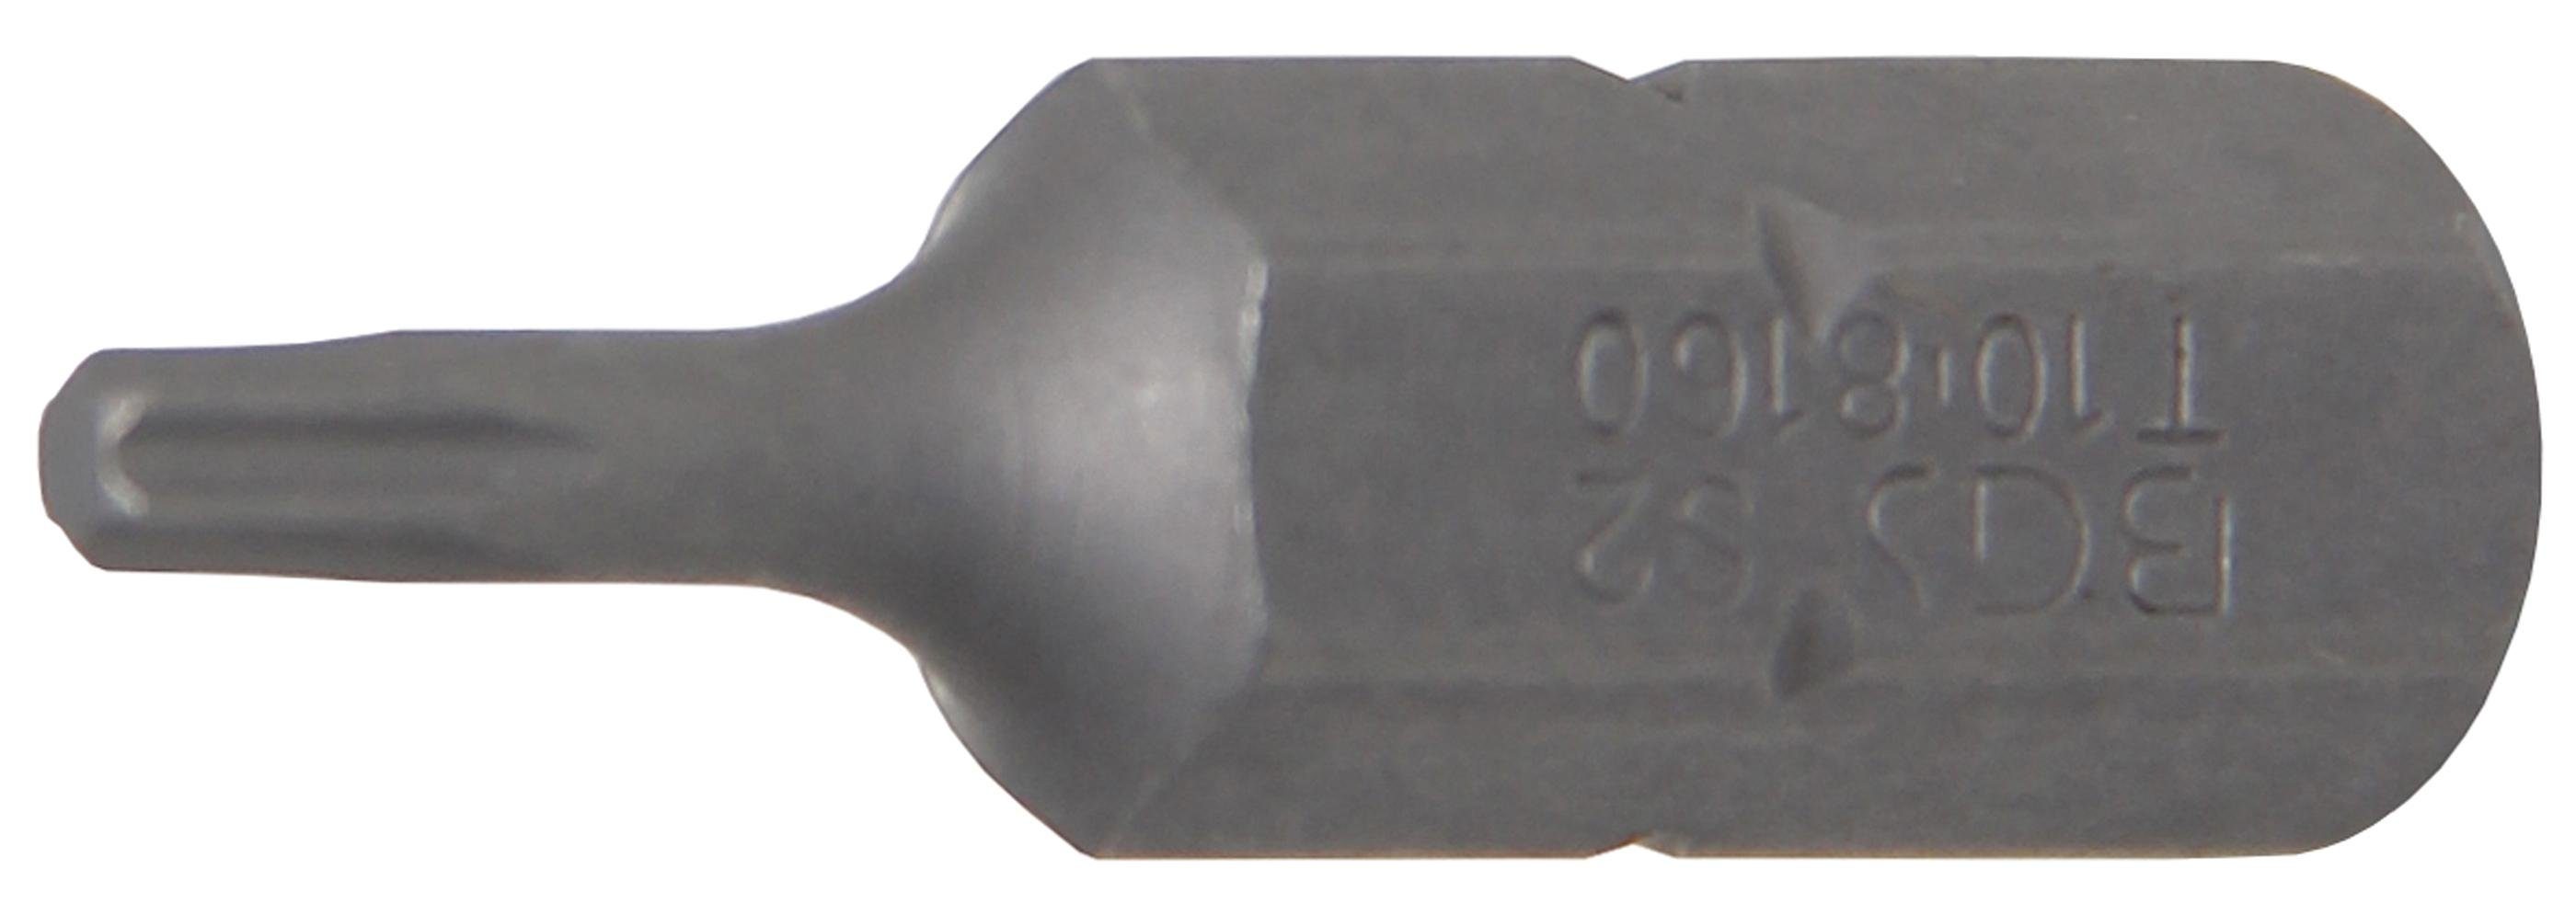 BGS technic Bit-Schraubendreher Bit, Antrieb Außensechskant 8 mm (5/16), T-Profil (für Torx) T10